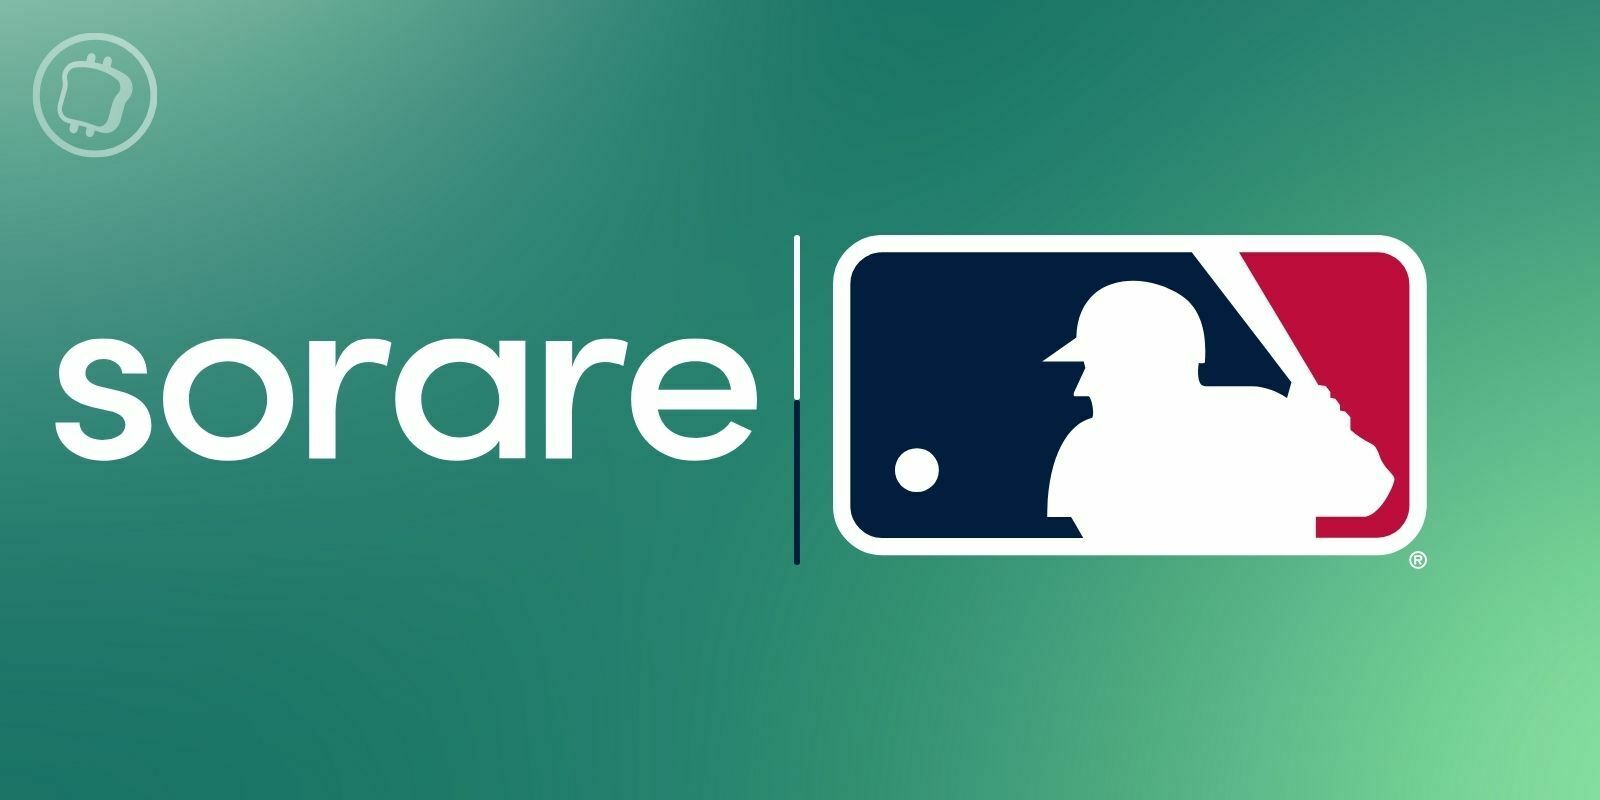 Sorare MLB : le baseball est officiellement disponible sur la plateforme de NFT